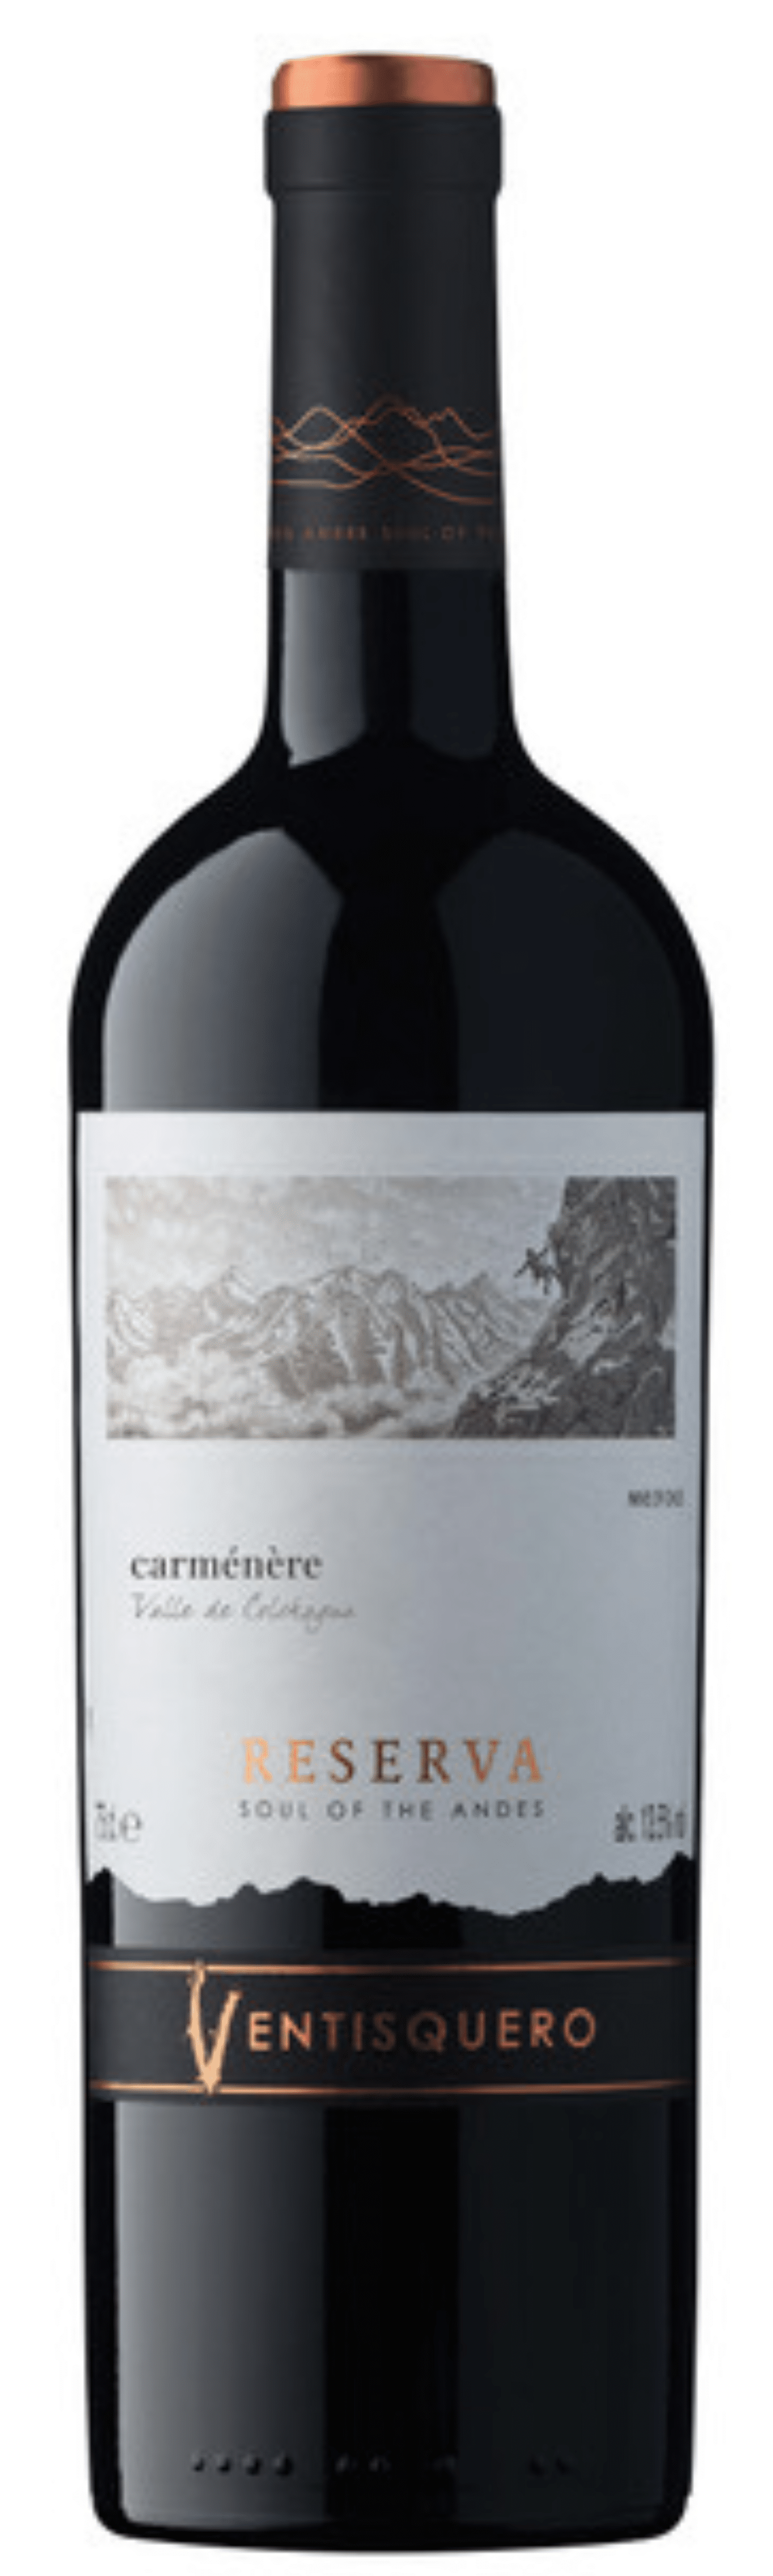 2020 Trois VALLE DE Ventisquero Fois COLCHAGUA - Reserva Vin Carmenère CHILI